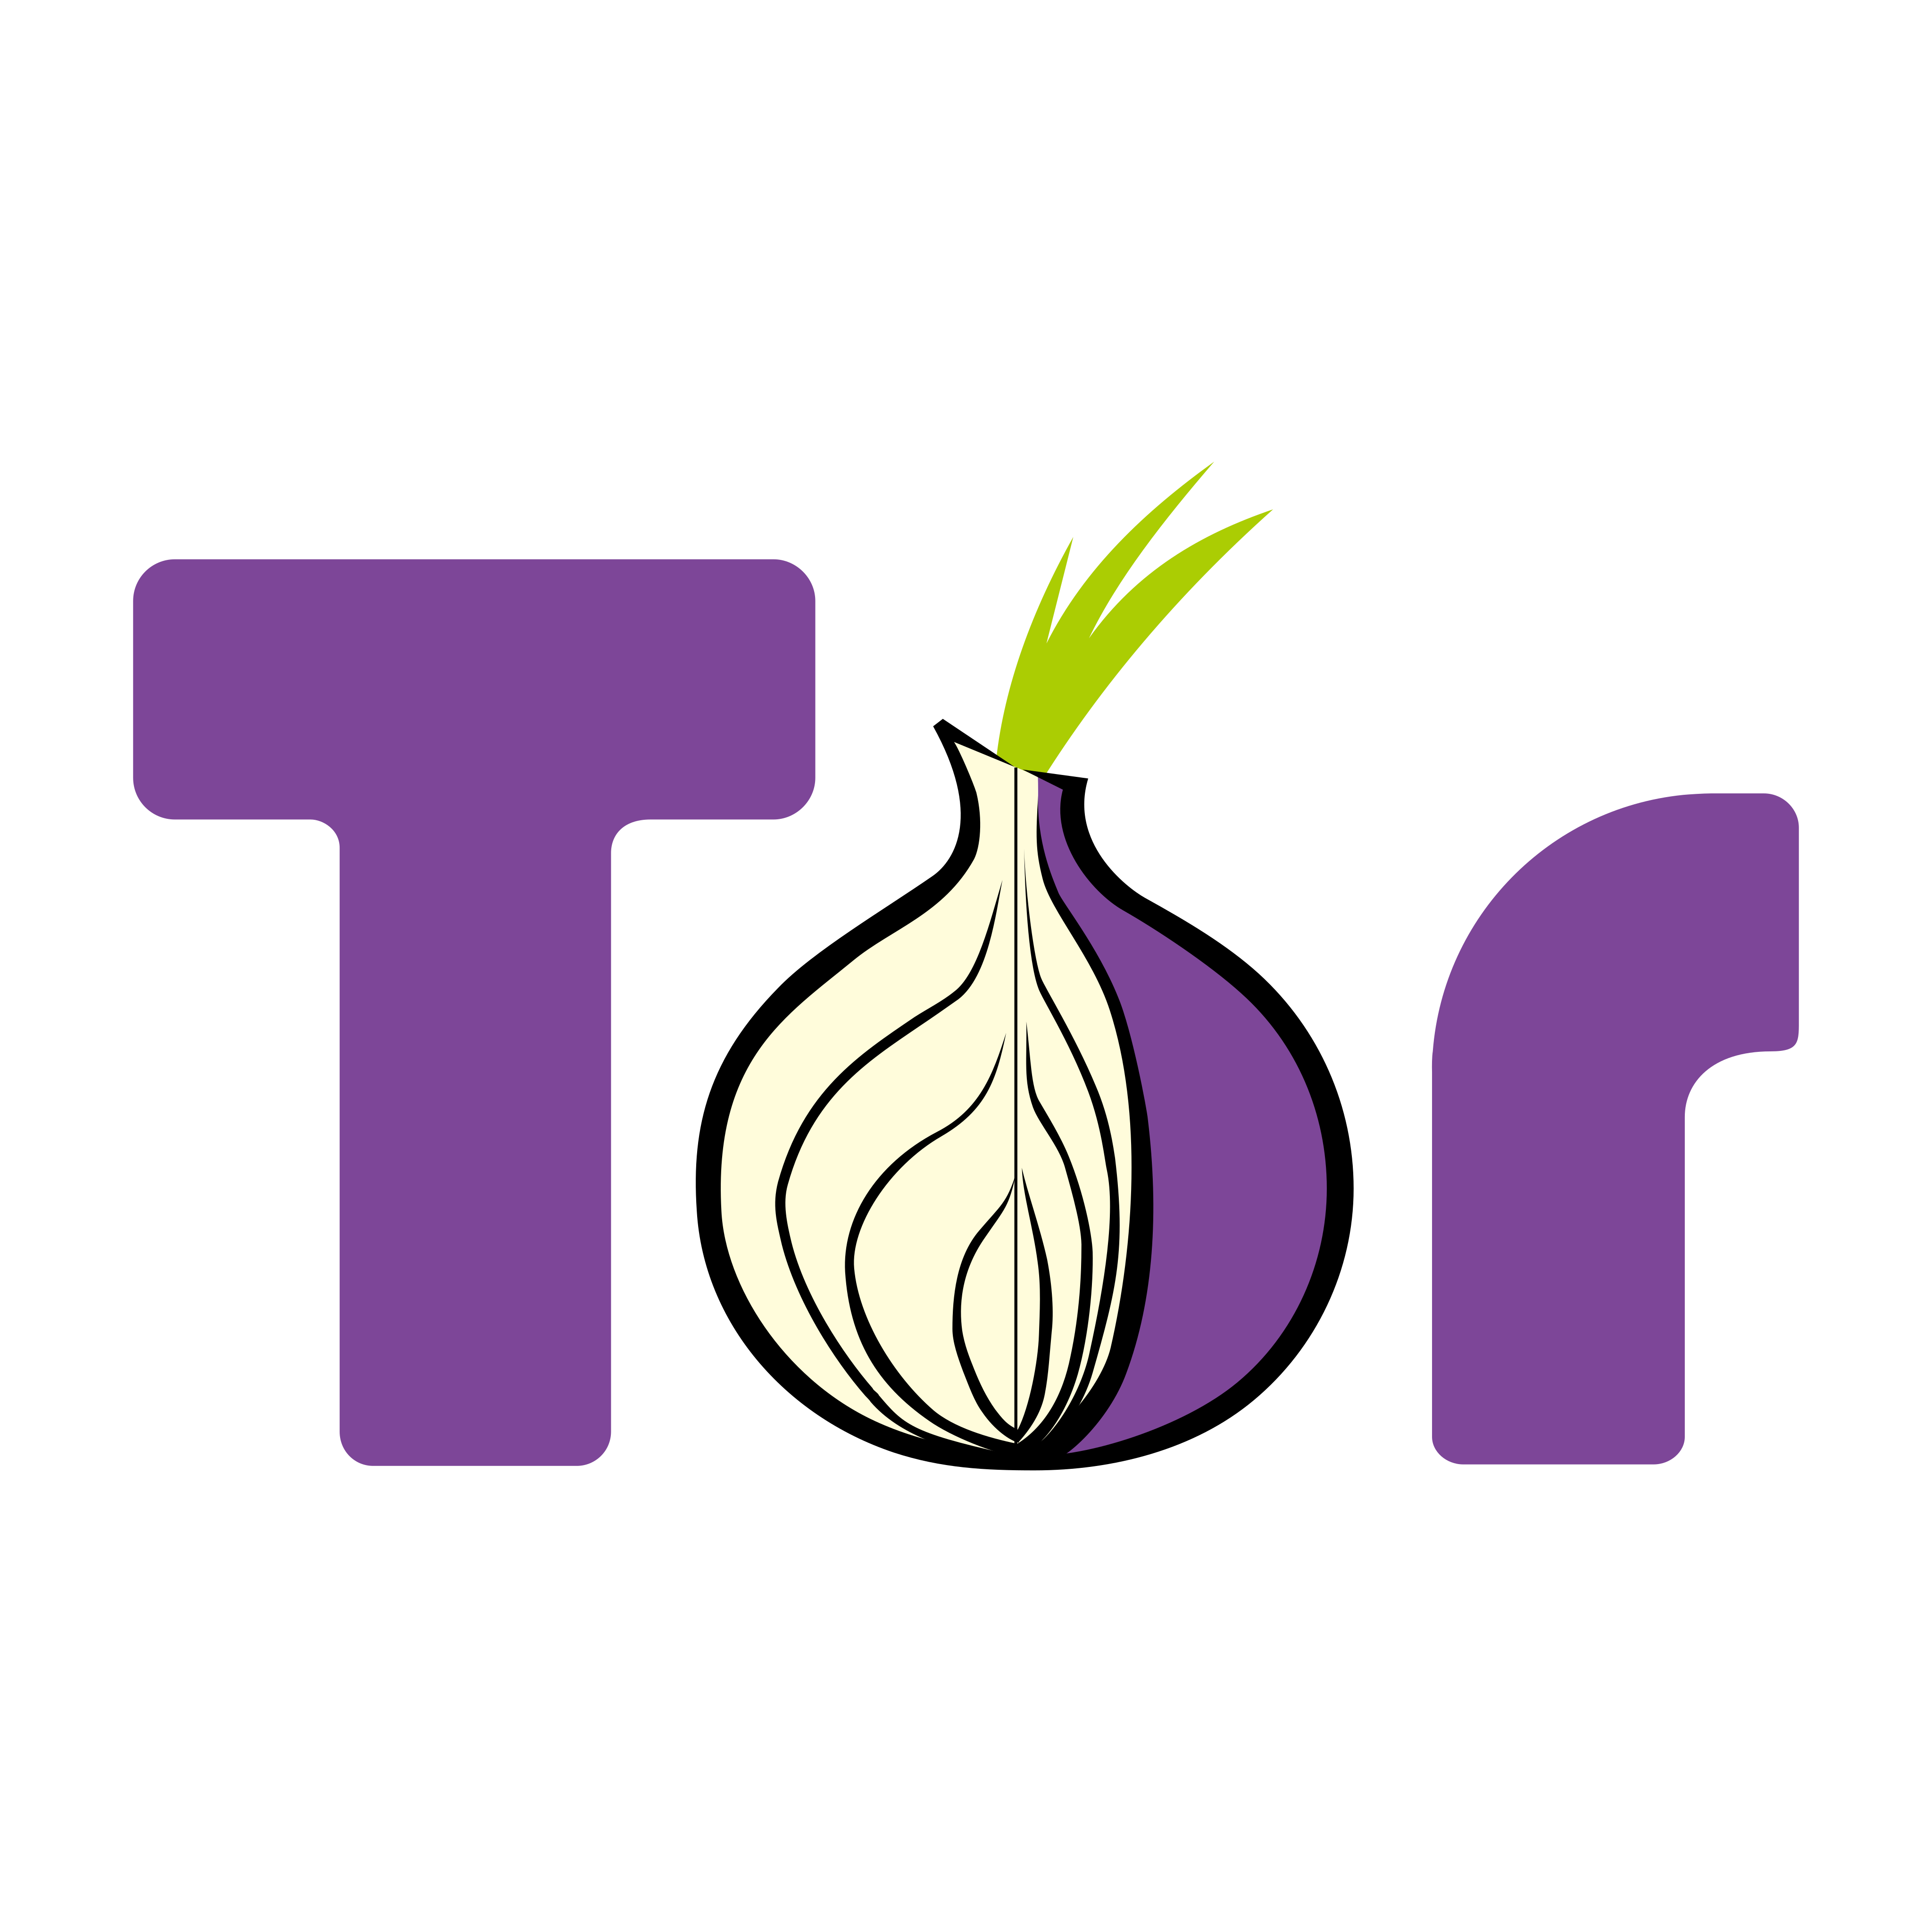 tor logo 0 - TOR Logo